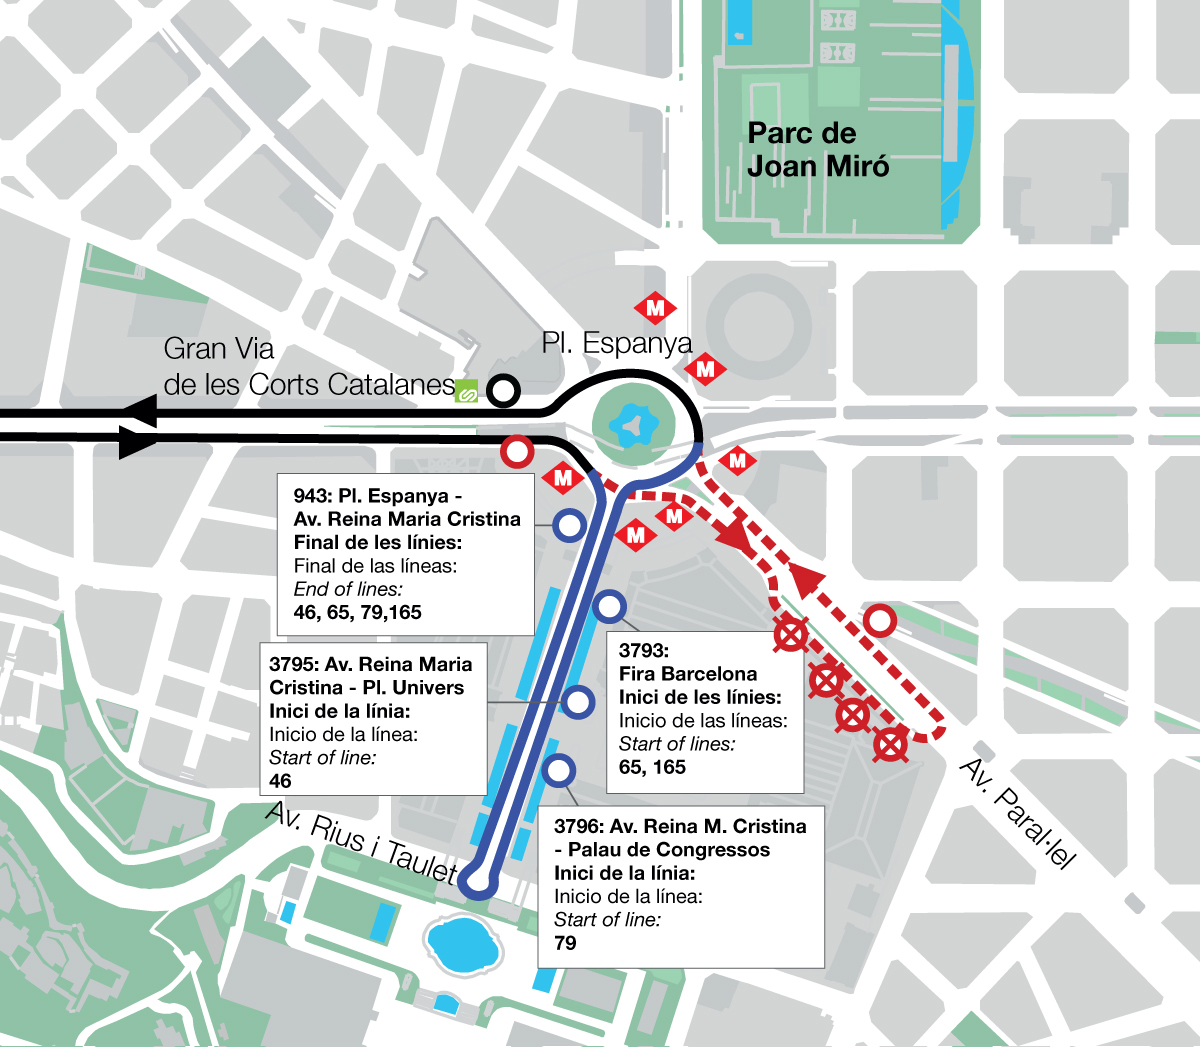 Esquema de les parades anul·lades al Paral·lel i com queden ubicades a l'avinguda Reina Maria Cristina / TMB